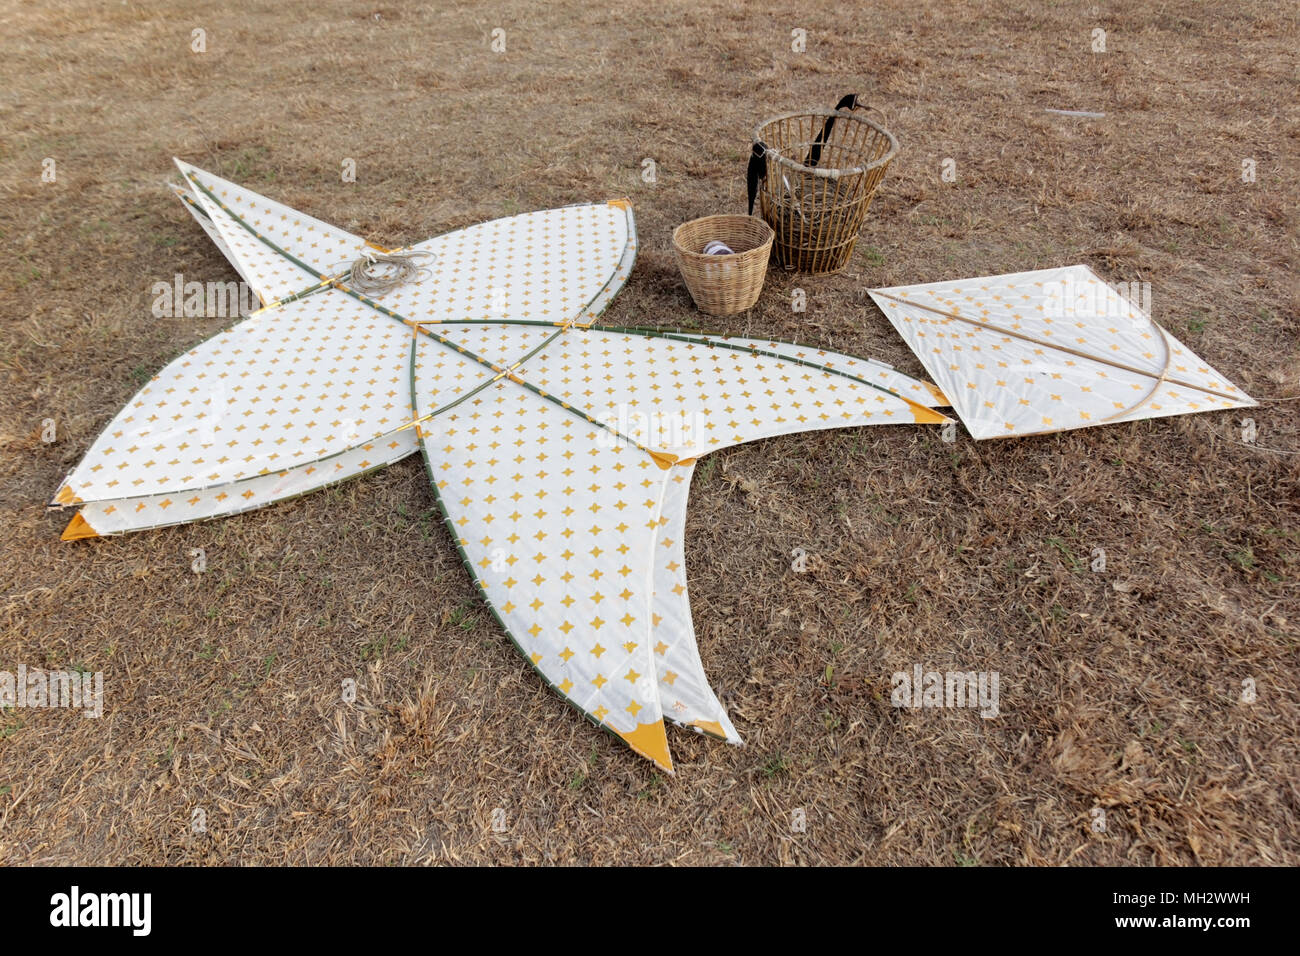 star-shaped kite, traditional Thai kites on ground Stock Photo